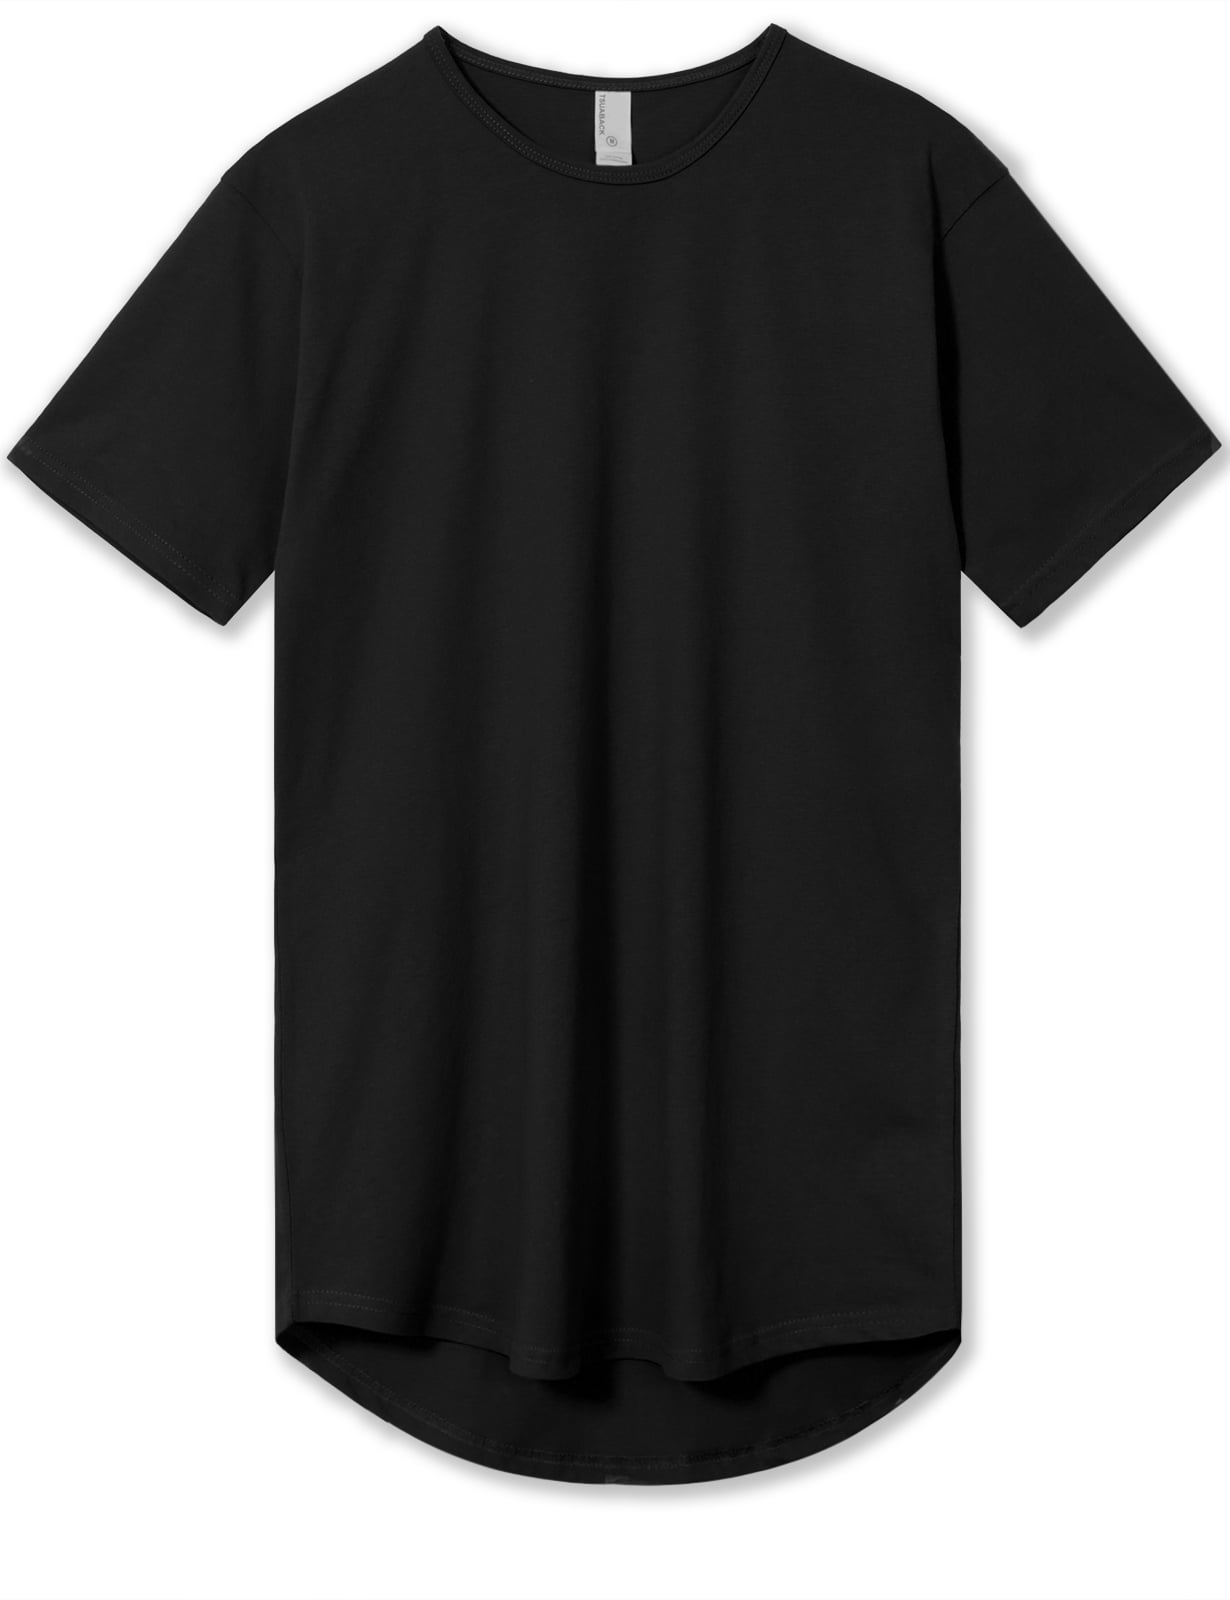 3xl tall t shirts Big sale - OFF 71%